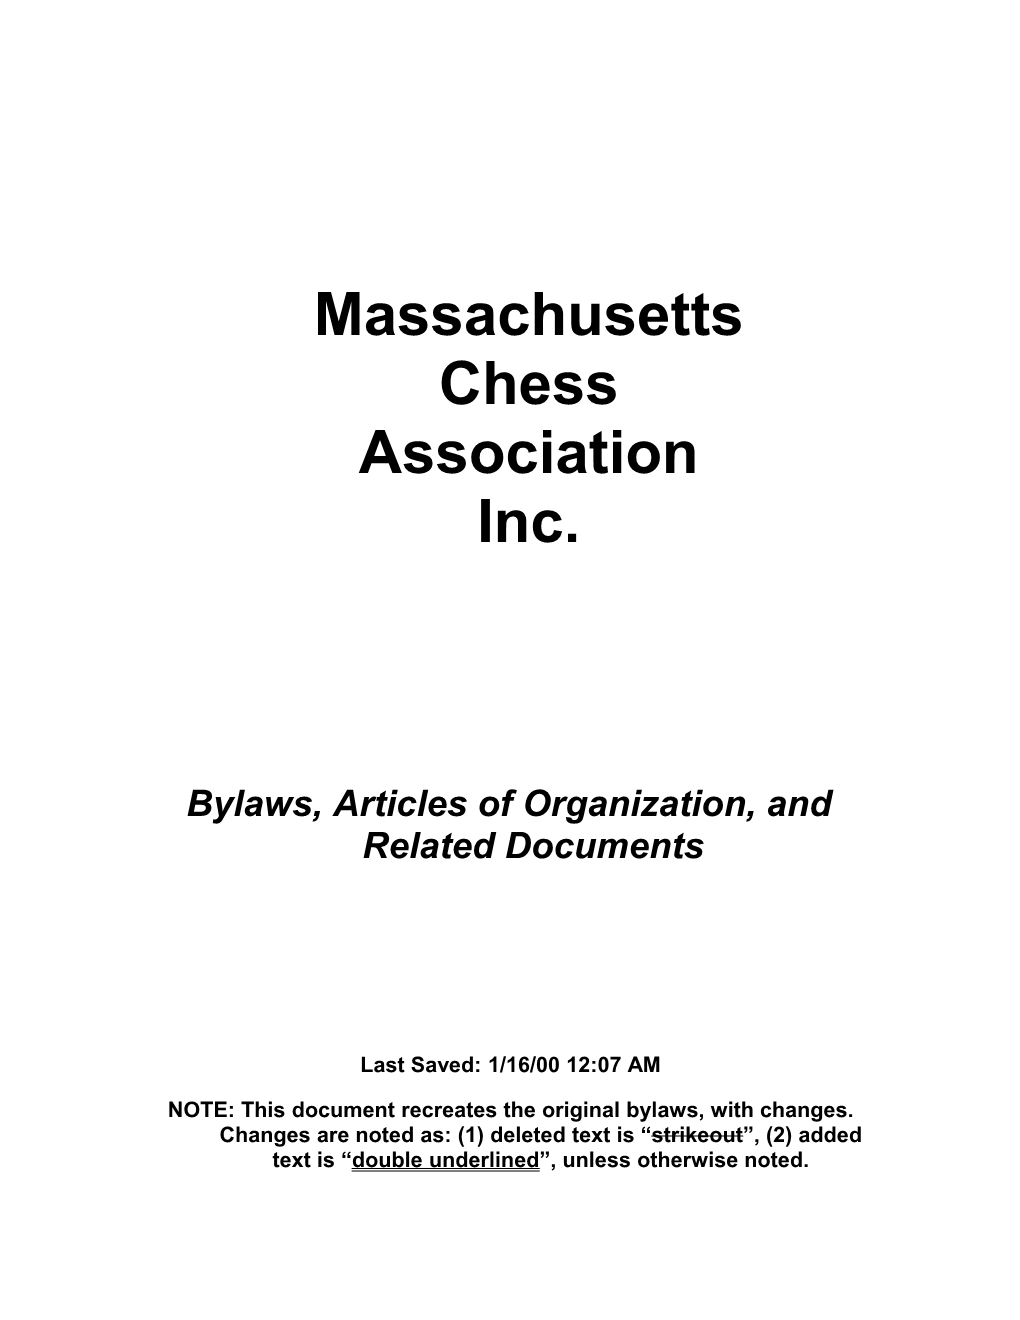 Massachusetts Chess Association Inc